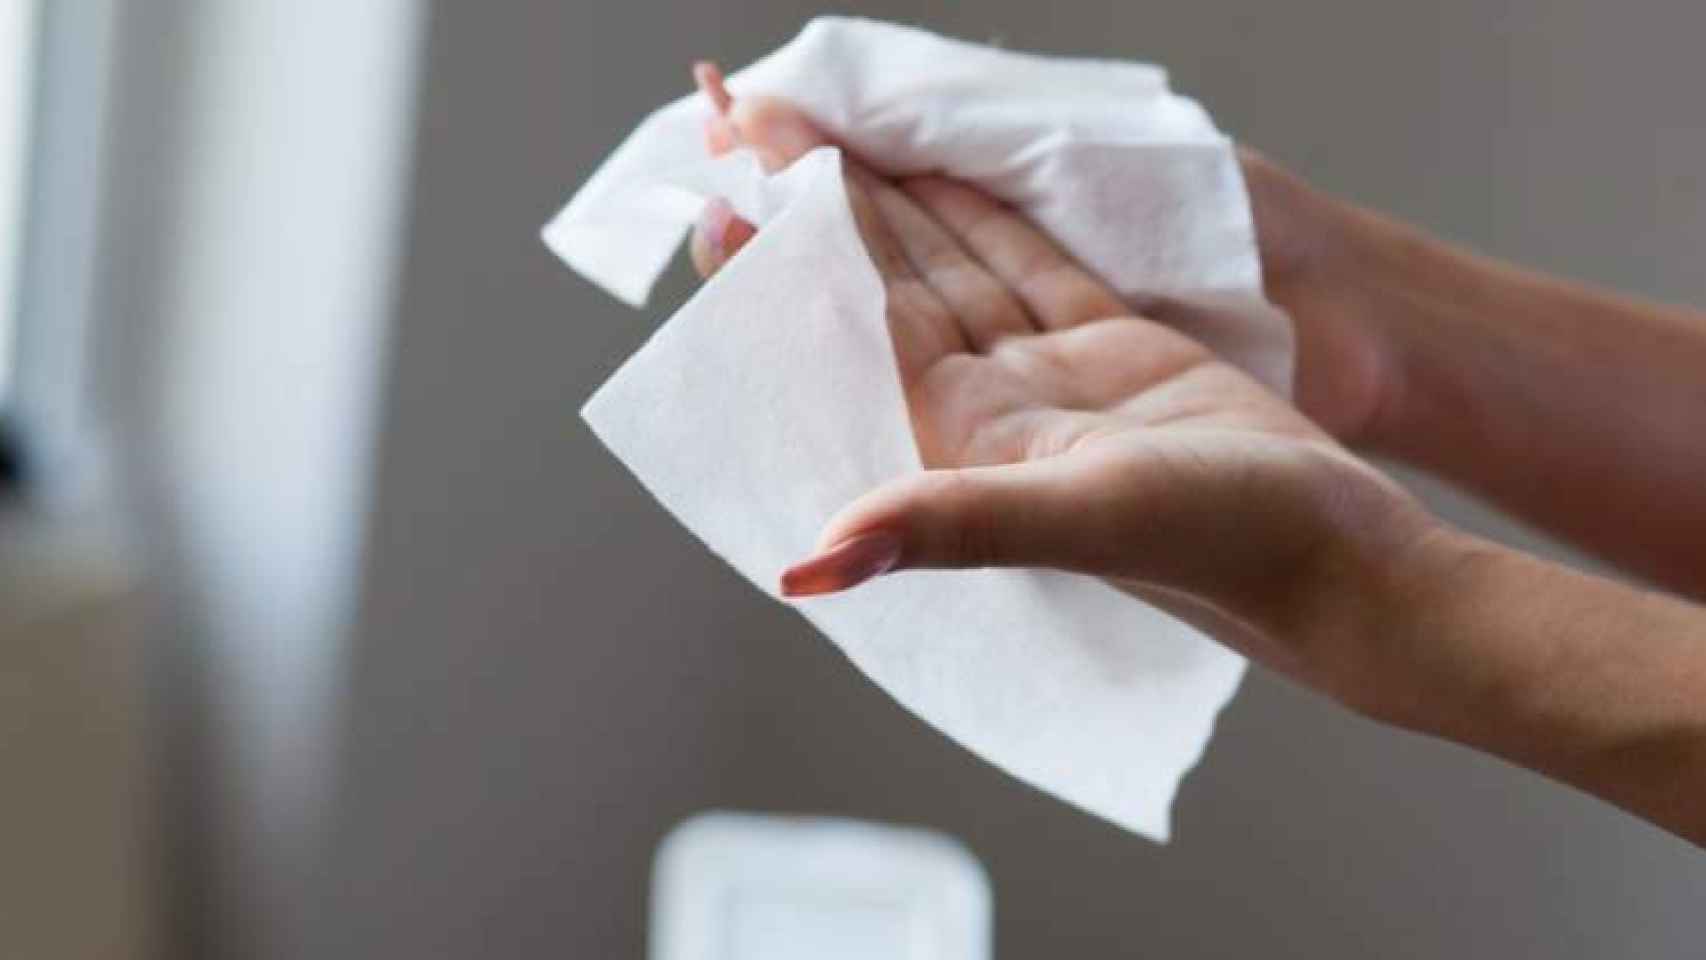 Una mujer se limpia las manos con unas toallitas.